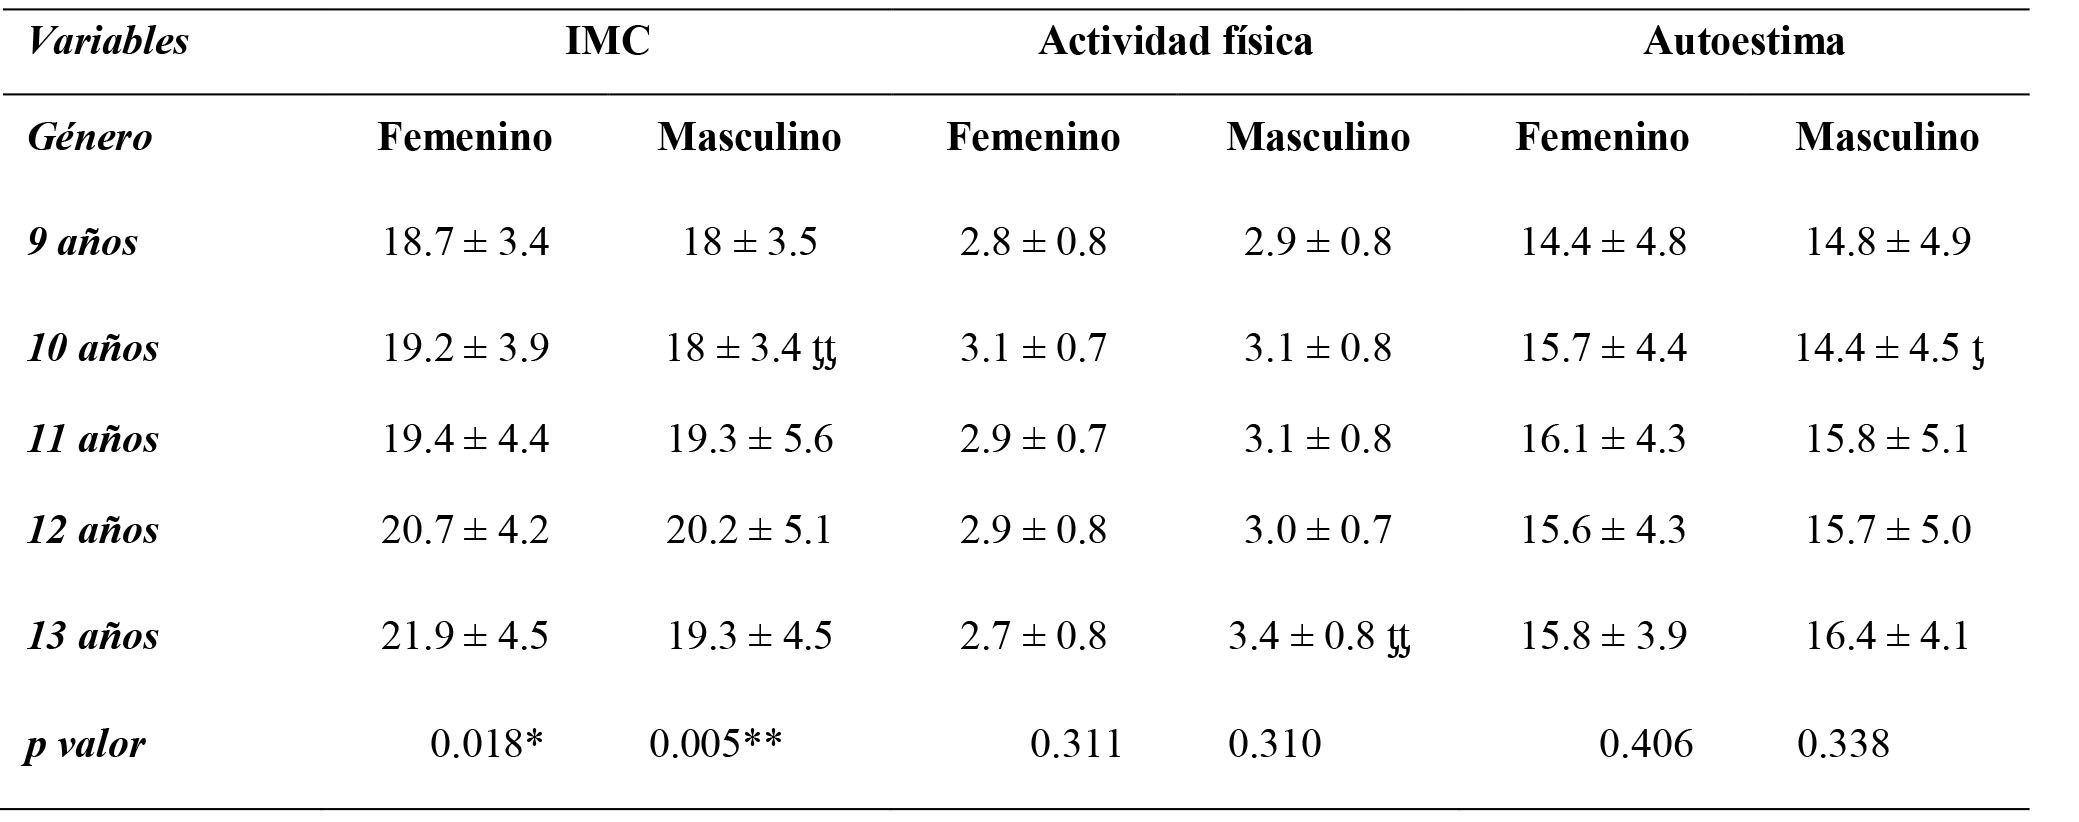 Comparación del peso corporal, nivel de actividad física y autoestima
en función de la edad y el sexo en escolares de San Pedro Sula (Honduras)